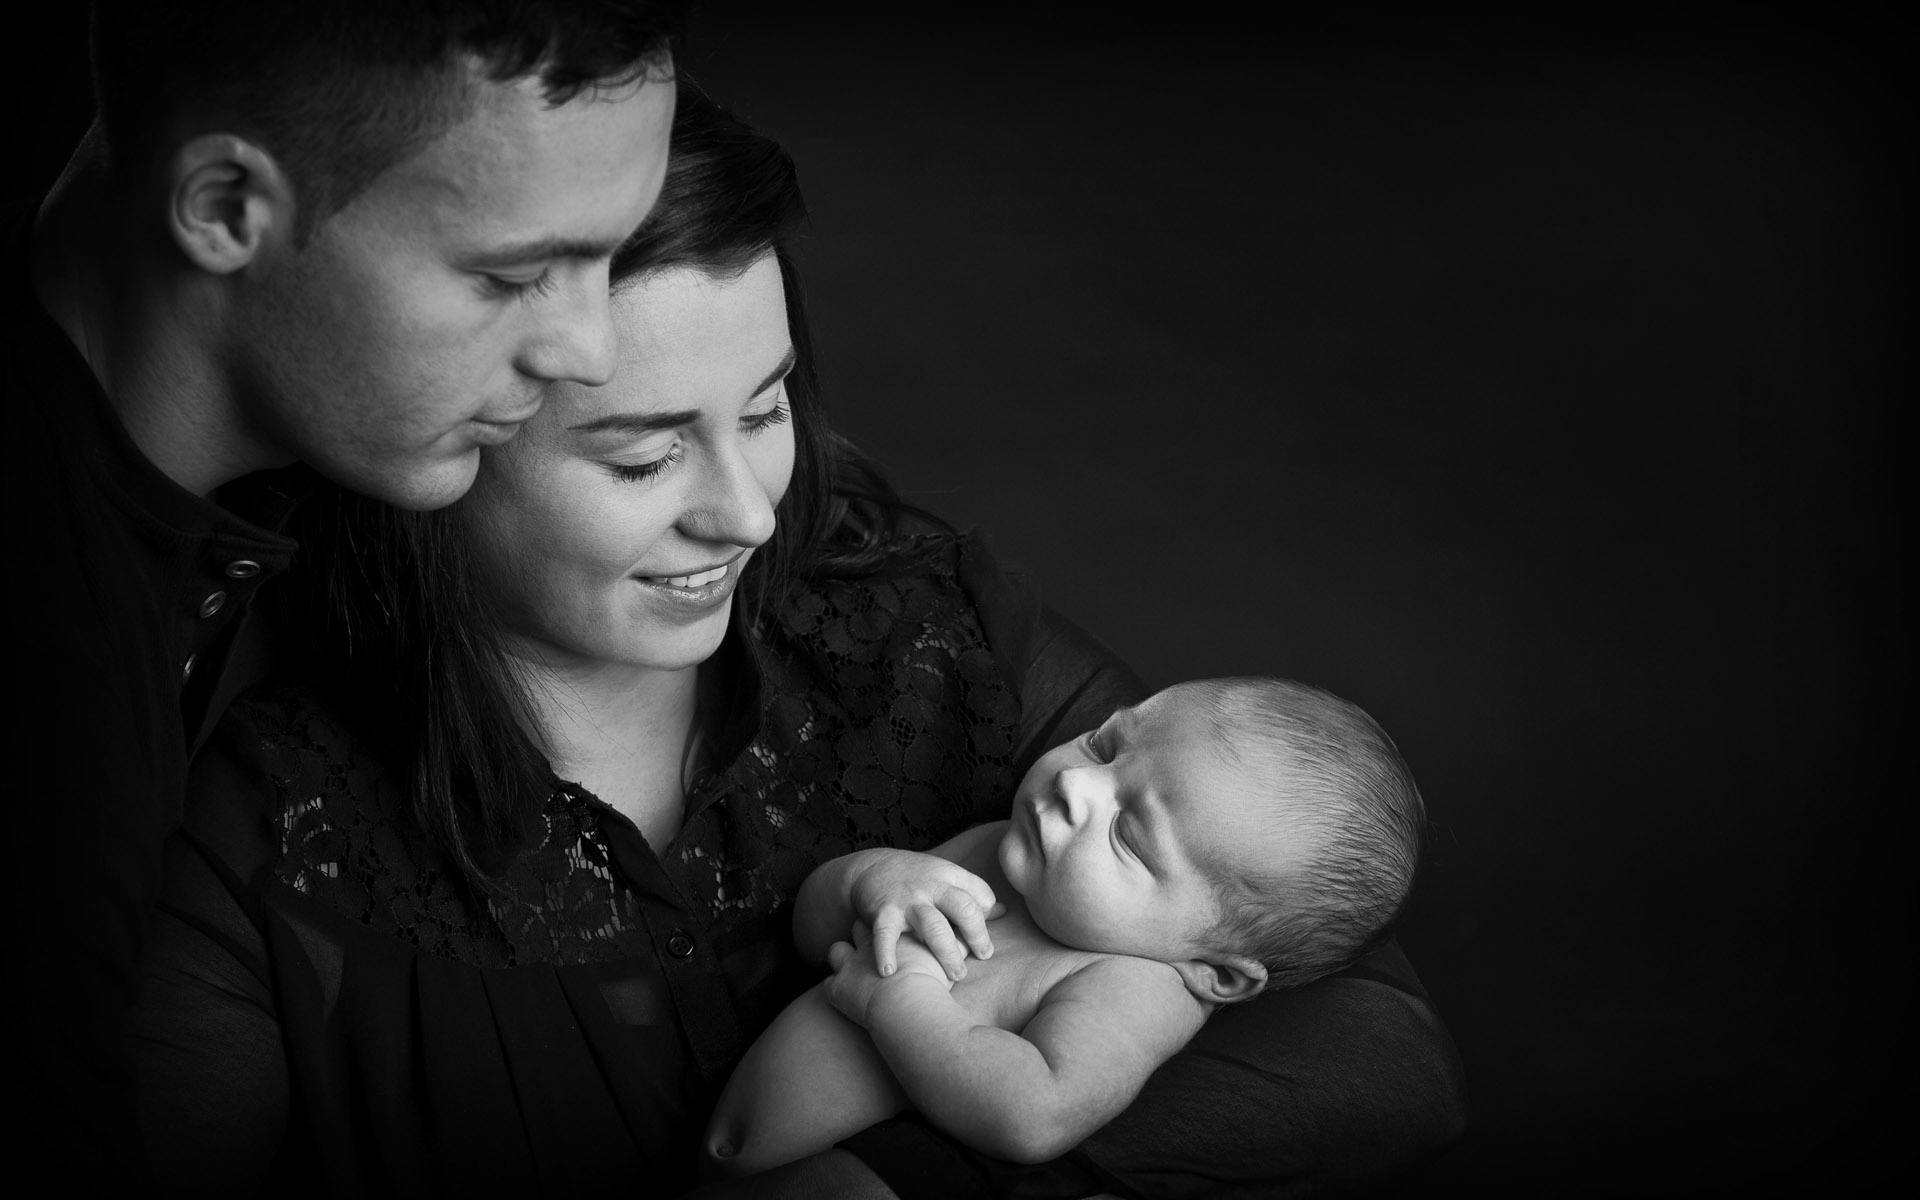 Classical Portrait Newborn Child with Parents